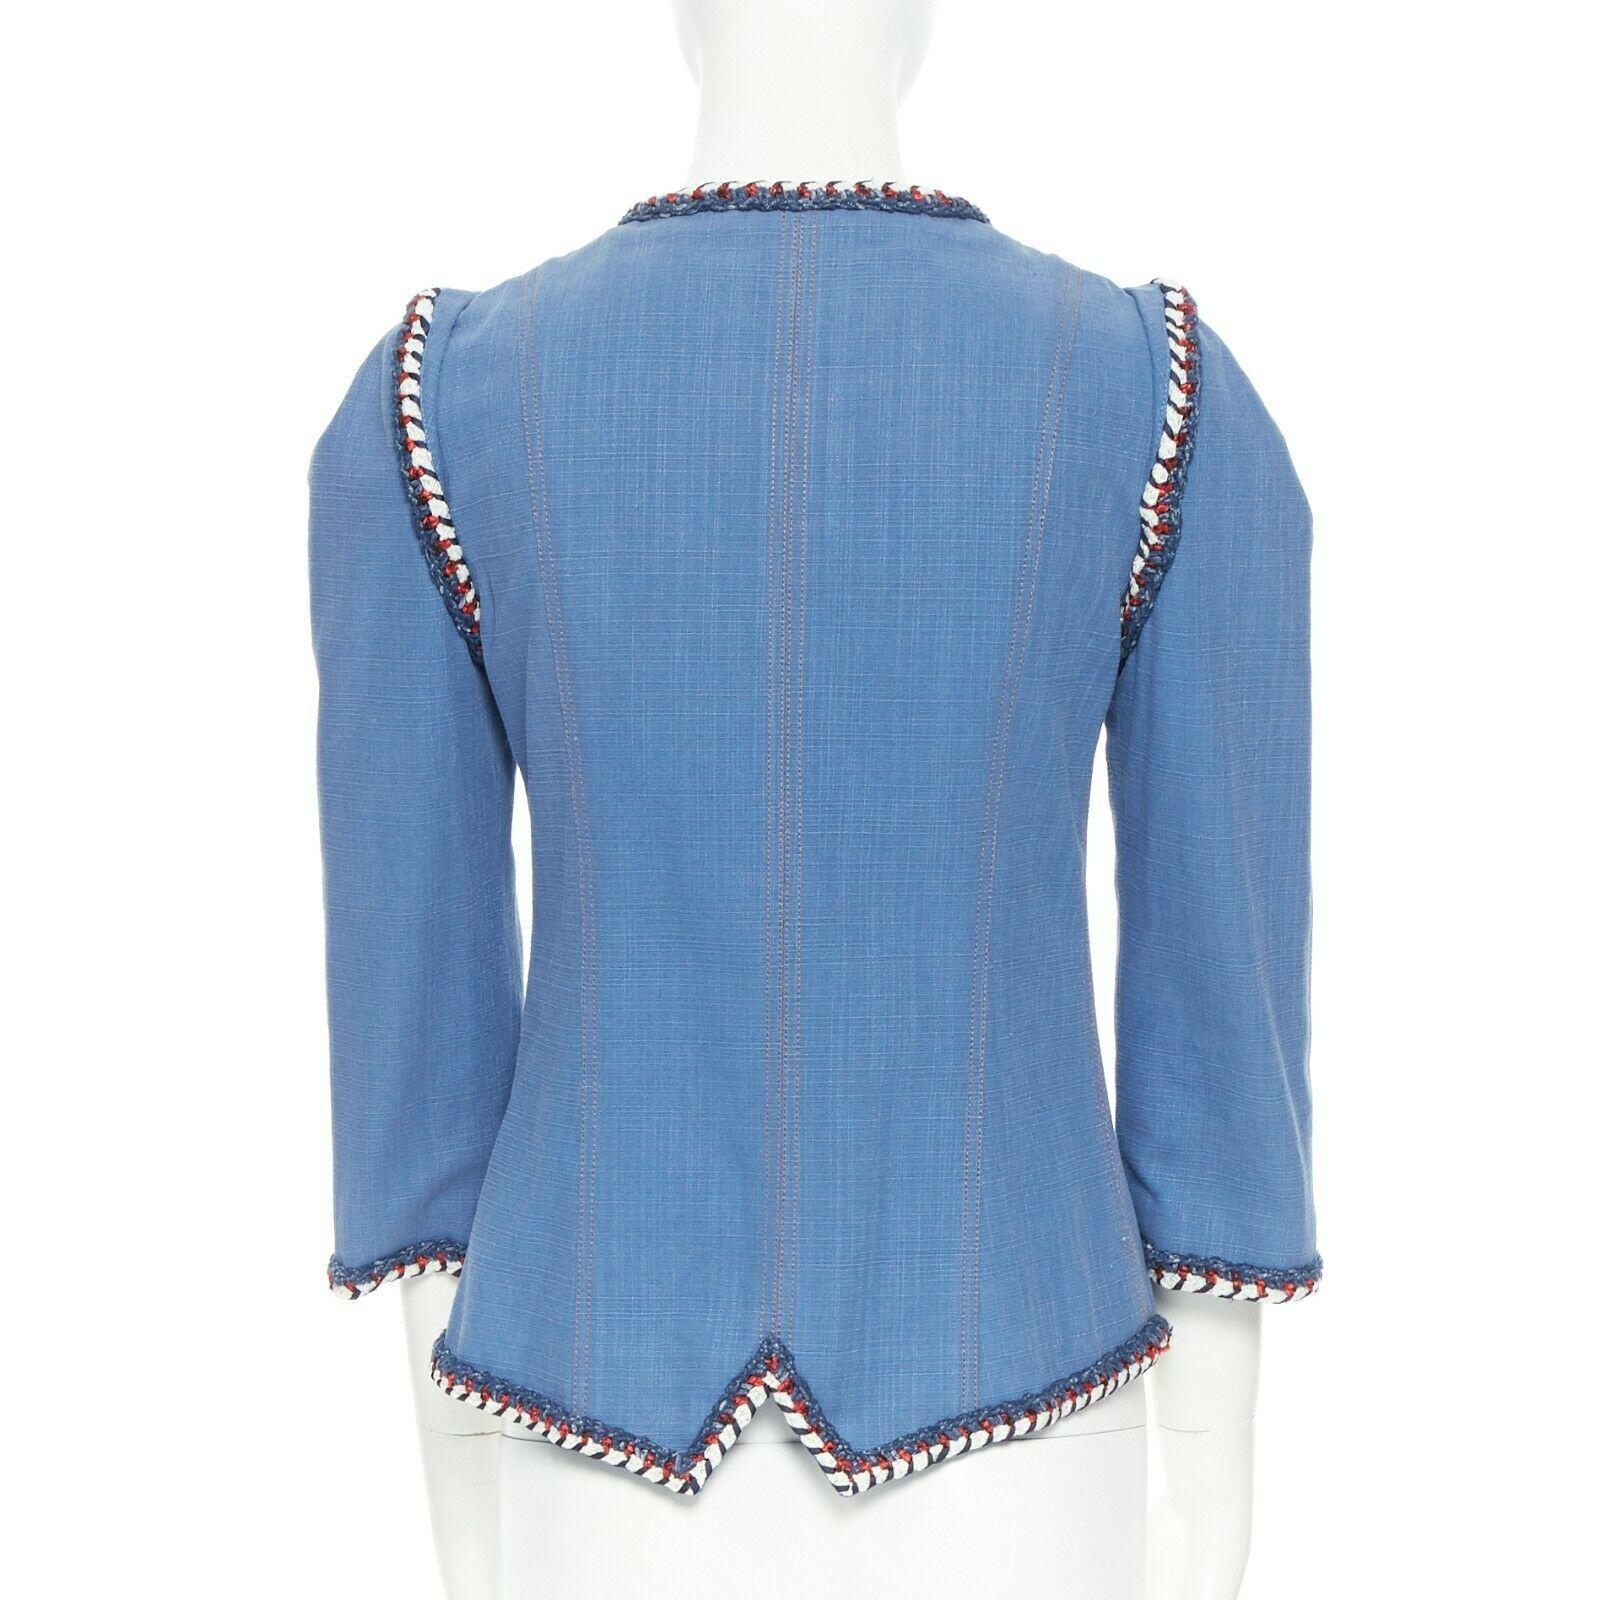 Women's runway CHANEL 2013 tweed trimmings 3/4 sleeves blue denim jacket FR34 XS